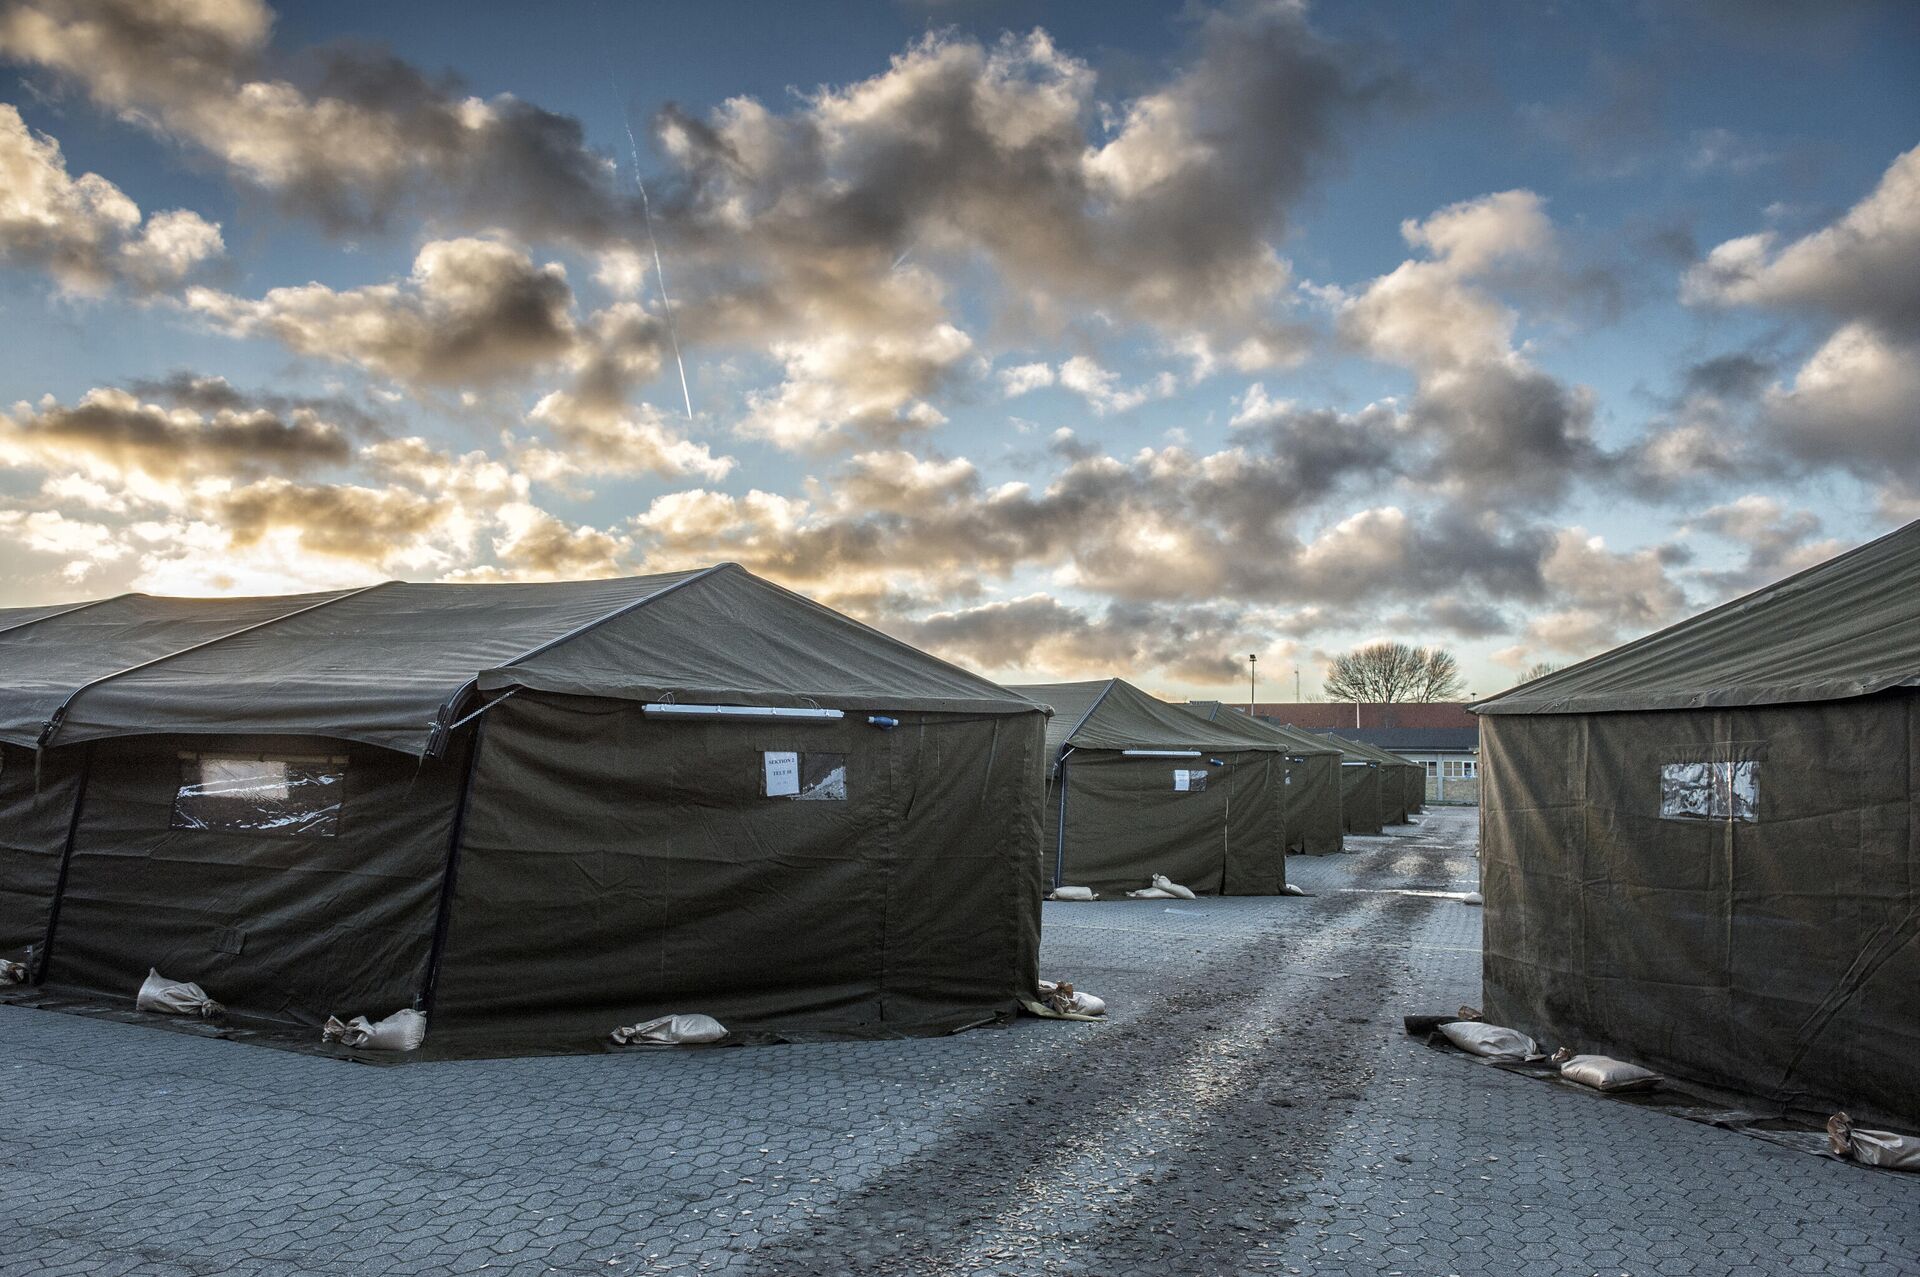 Лагерь беженцев в 100 км от Копенгагена, Дания  - РИА Новости, 1920, 12.03.2021